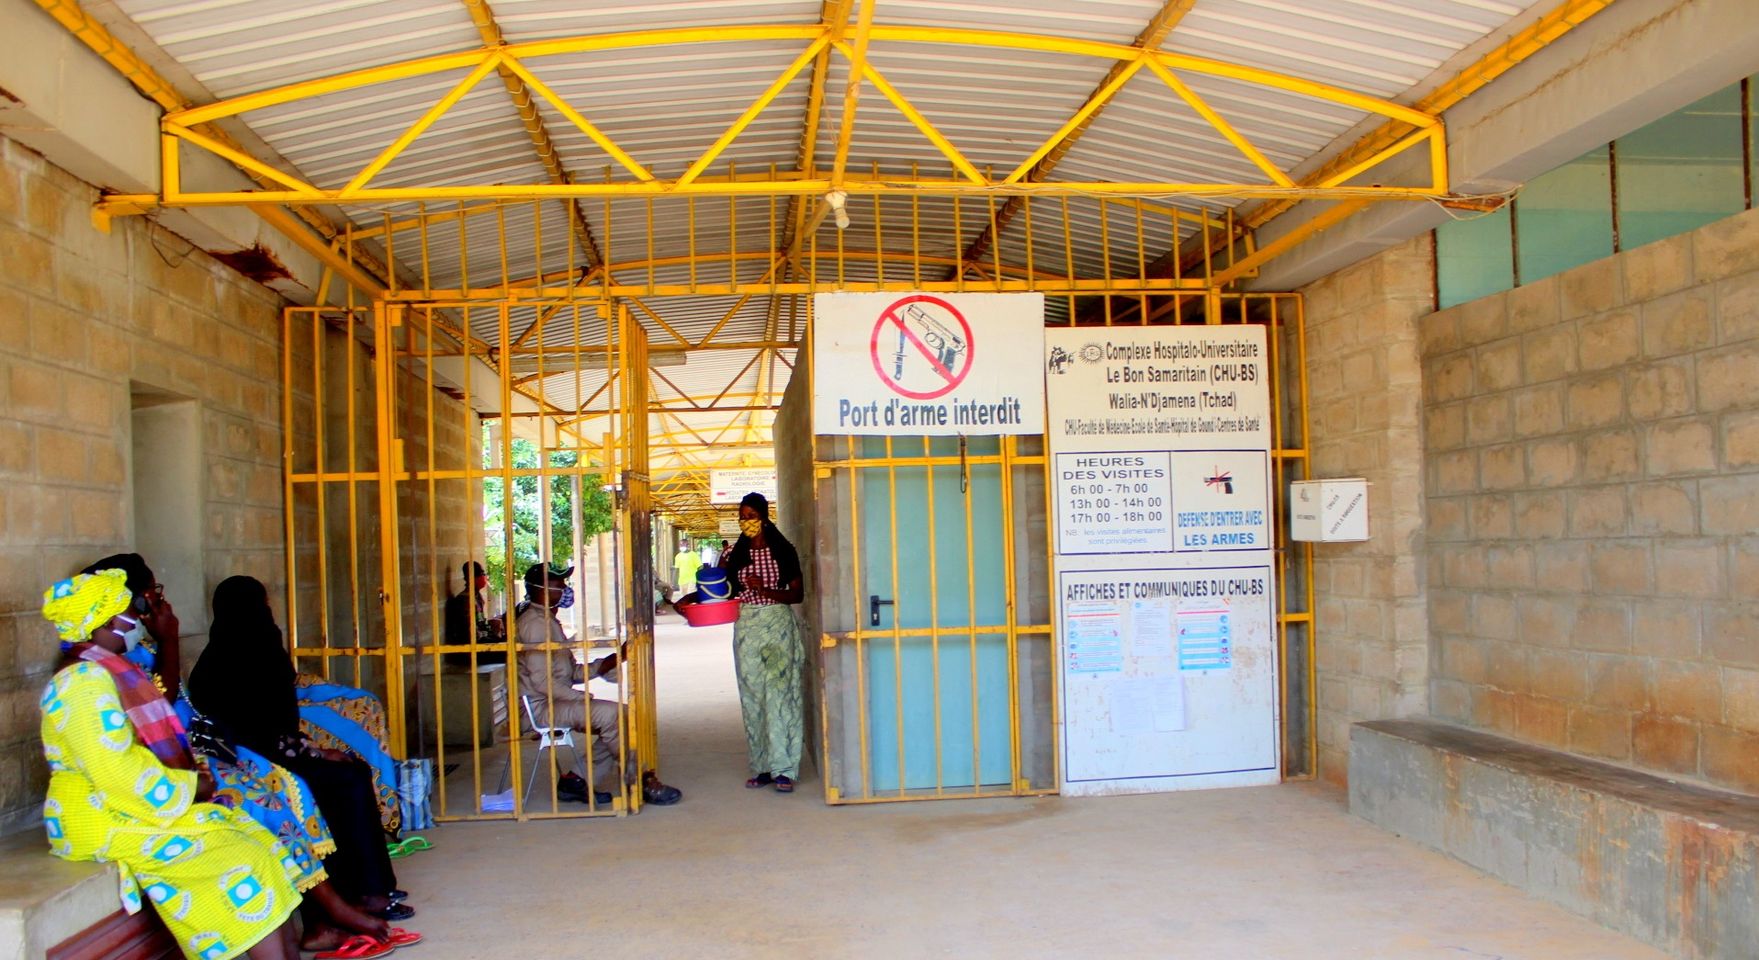 Santé bucco-dentaire : l’hôpital Le Bon samaritain annonce des consultations gratuites